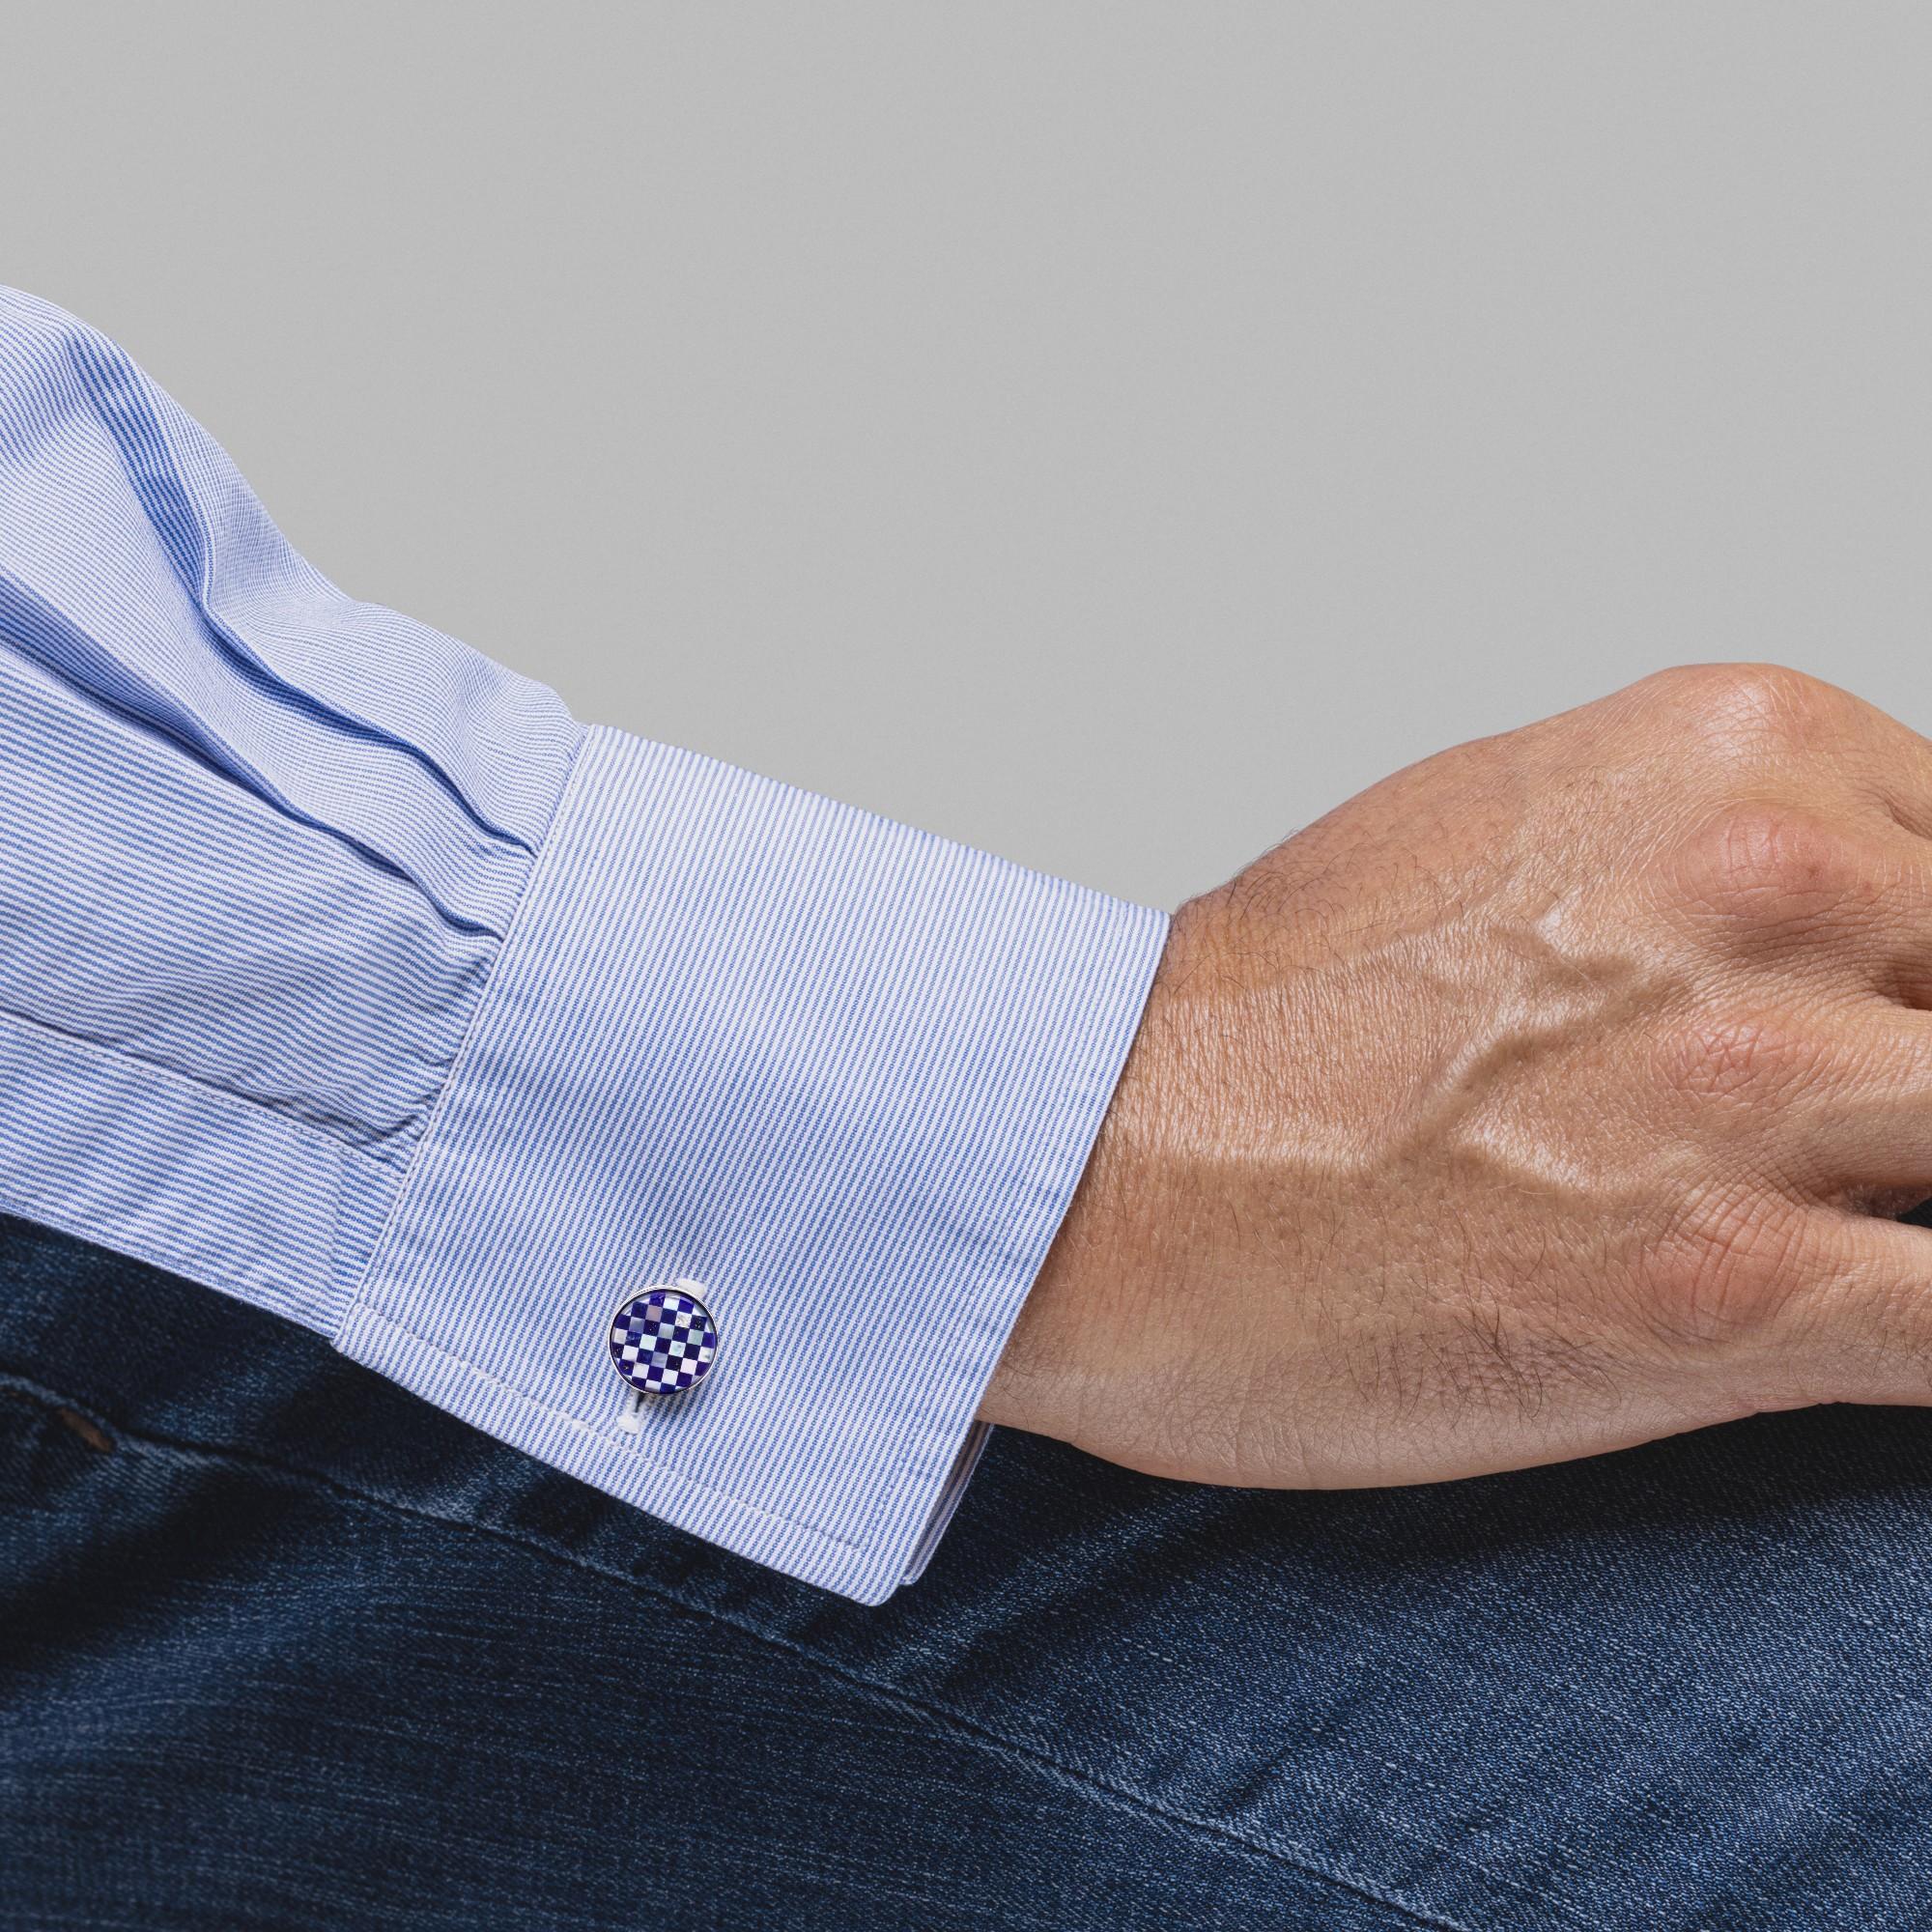 Collection design Alex Jona, boutons de manchette en argent sterling Lapis Lazuli, fabriqués à la main en Italie et plaqués rhodium. Marqué Jona 925. Dimensions : Diamètre 0.58 in / 14.90 mm X Profondeur 0.12 in / 3.20 mm

Les boutons de manchette